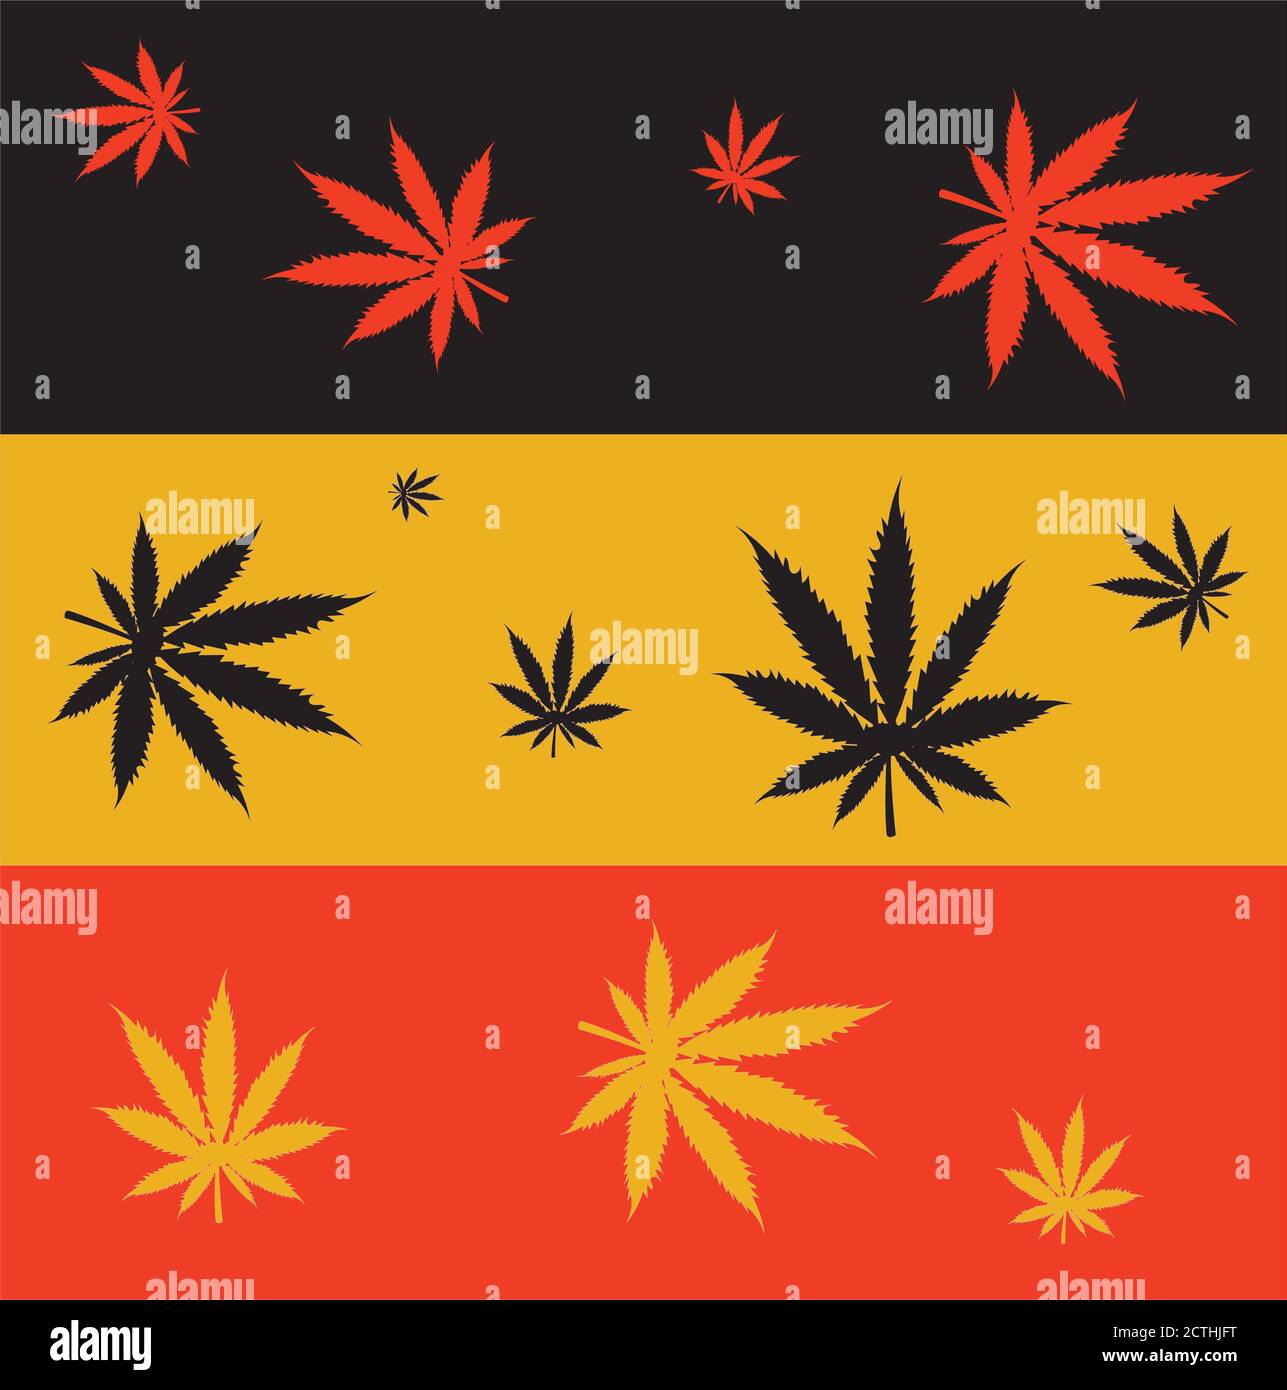 Legalisierung von Marihuana in Deutschland. Deutschland Flagge mit Cannabisblättern. Stock Vektor